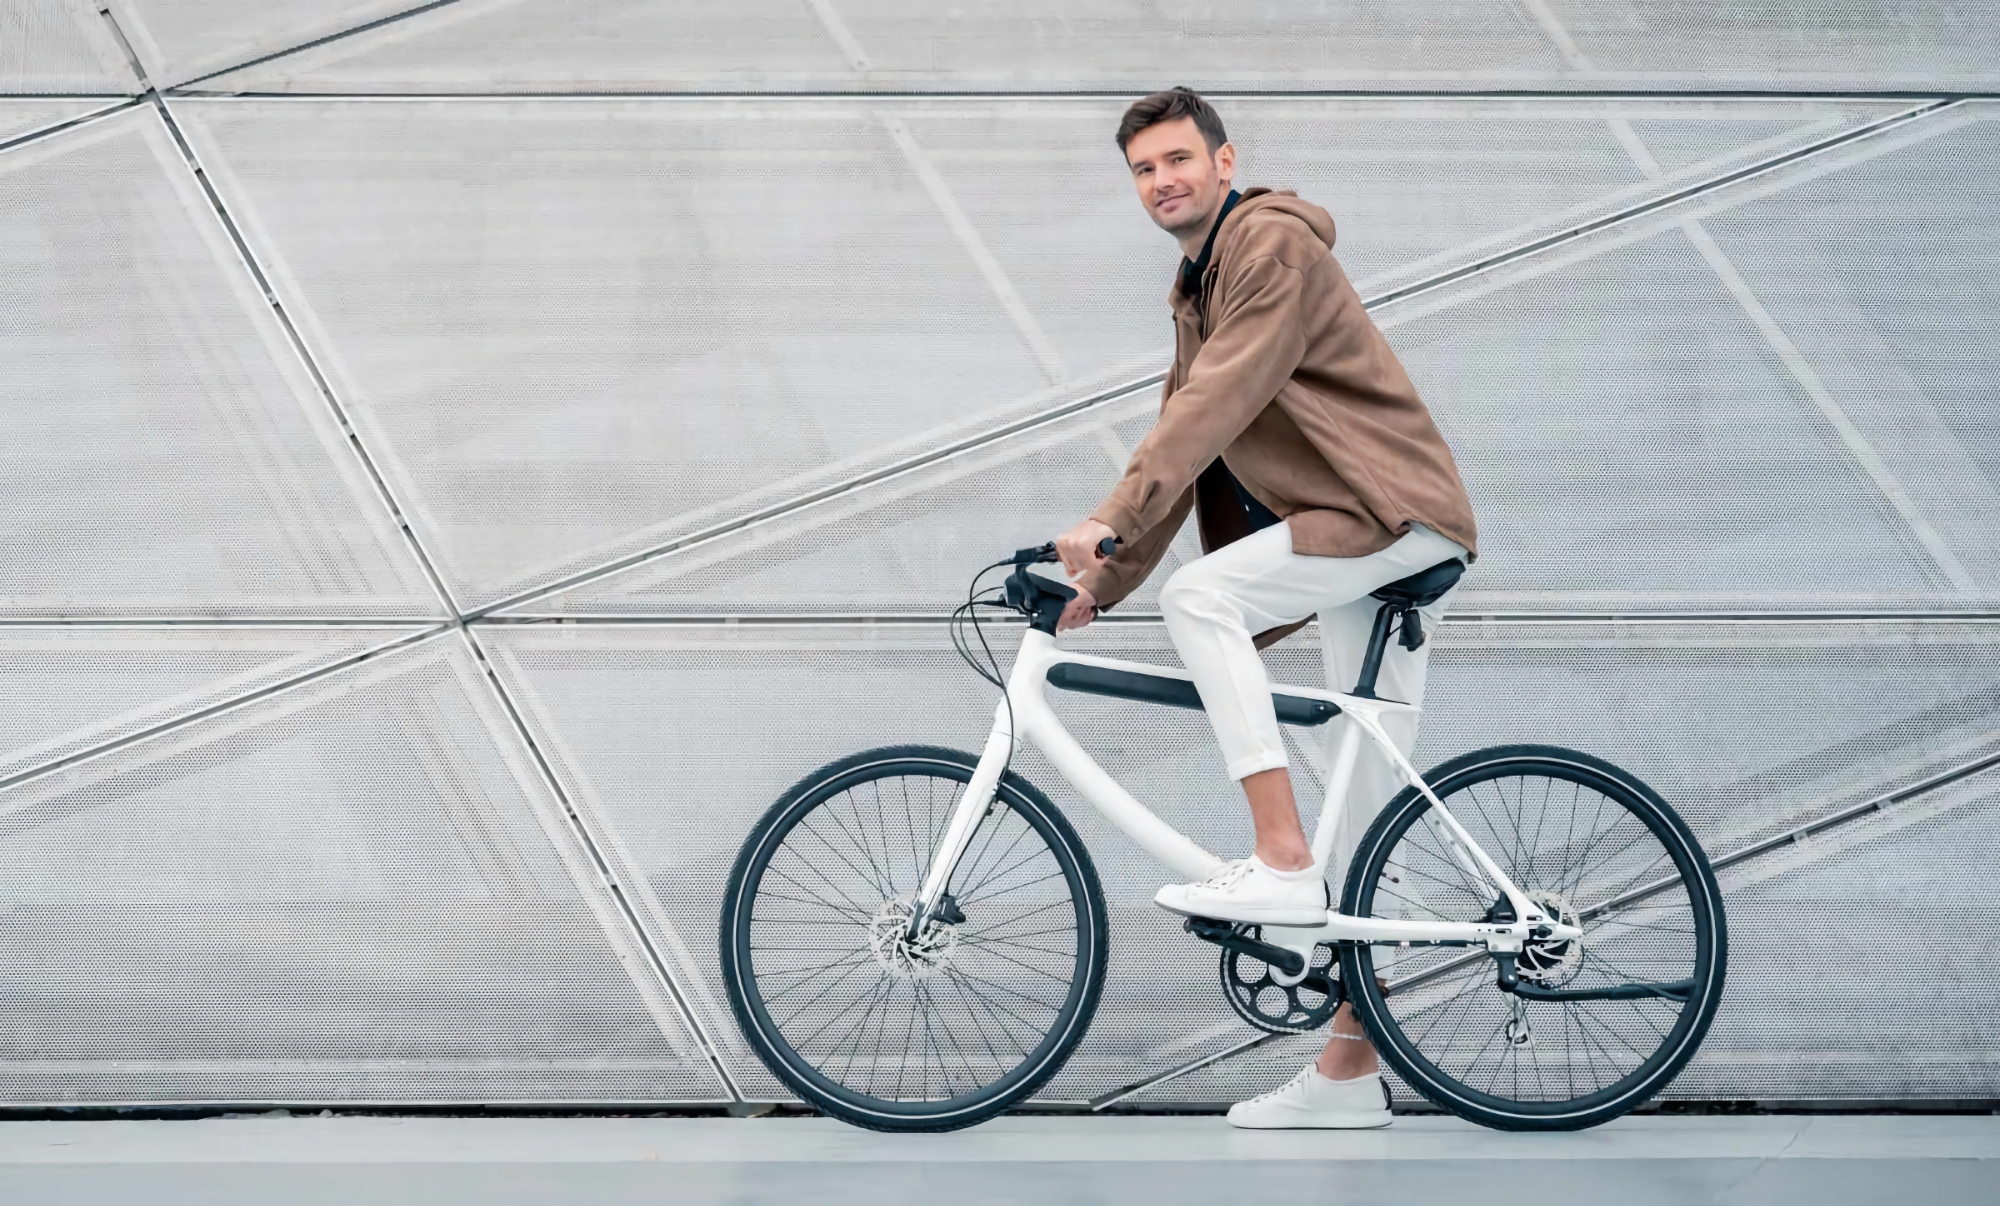 Urtopia lance le Chord en Europe : un vélo électrique élégant doté d'une autonomie de 120 km, d'un GPS et d'un lecteur d'empreintes digitales.